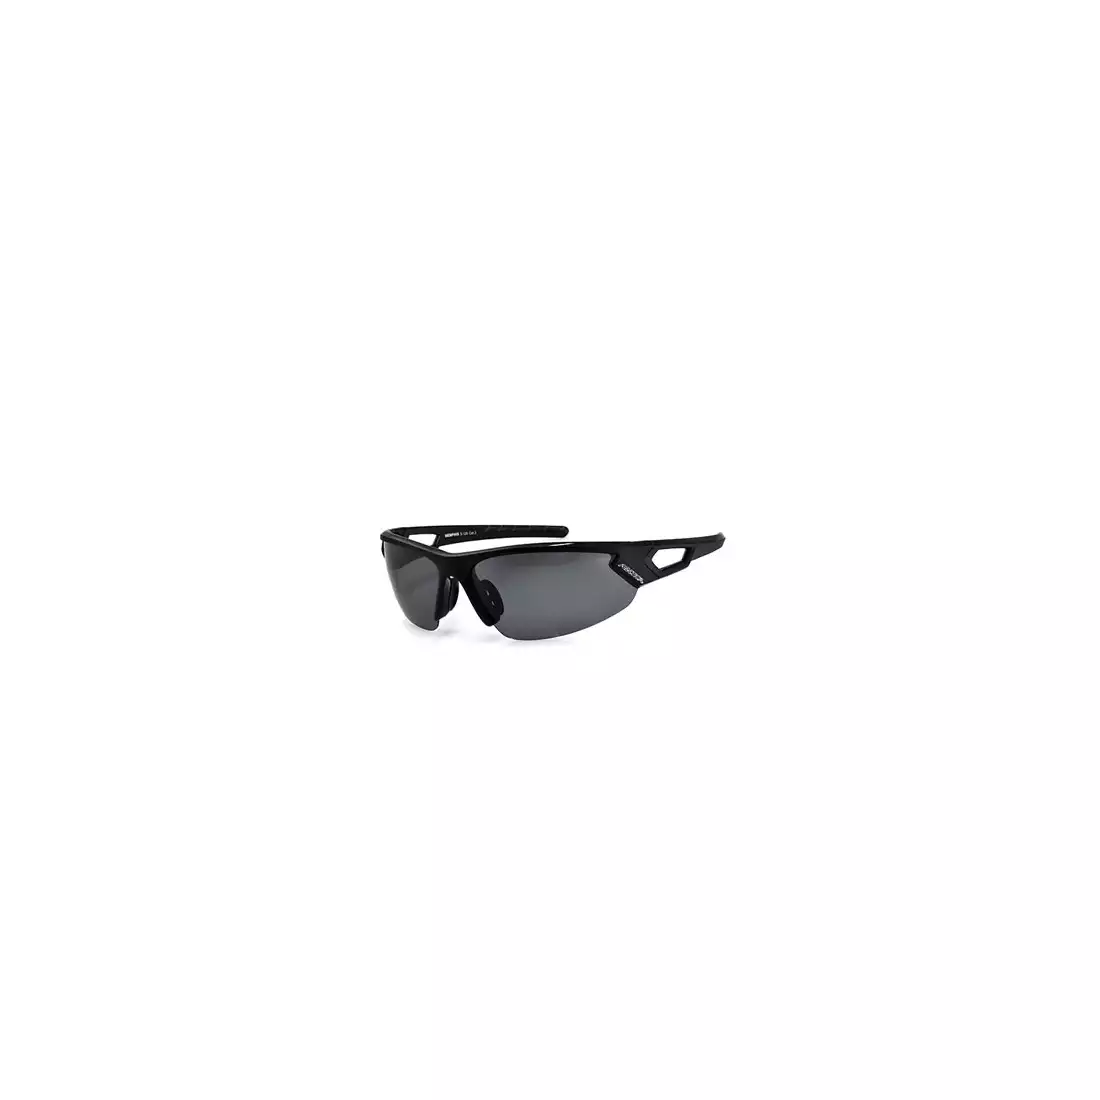 ARCTICA okulary sportowe, S 129B